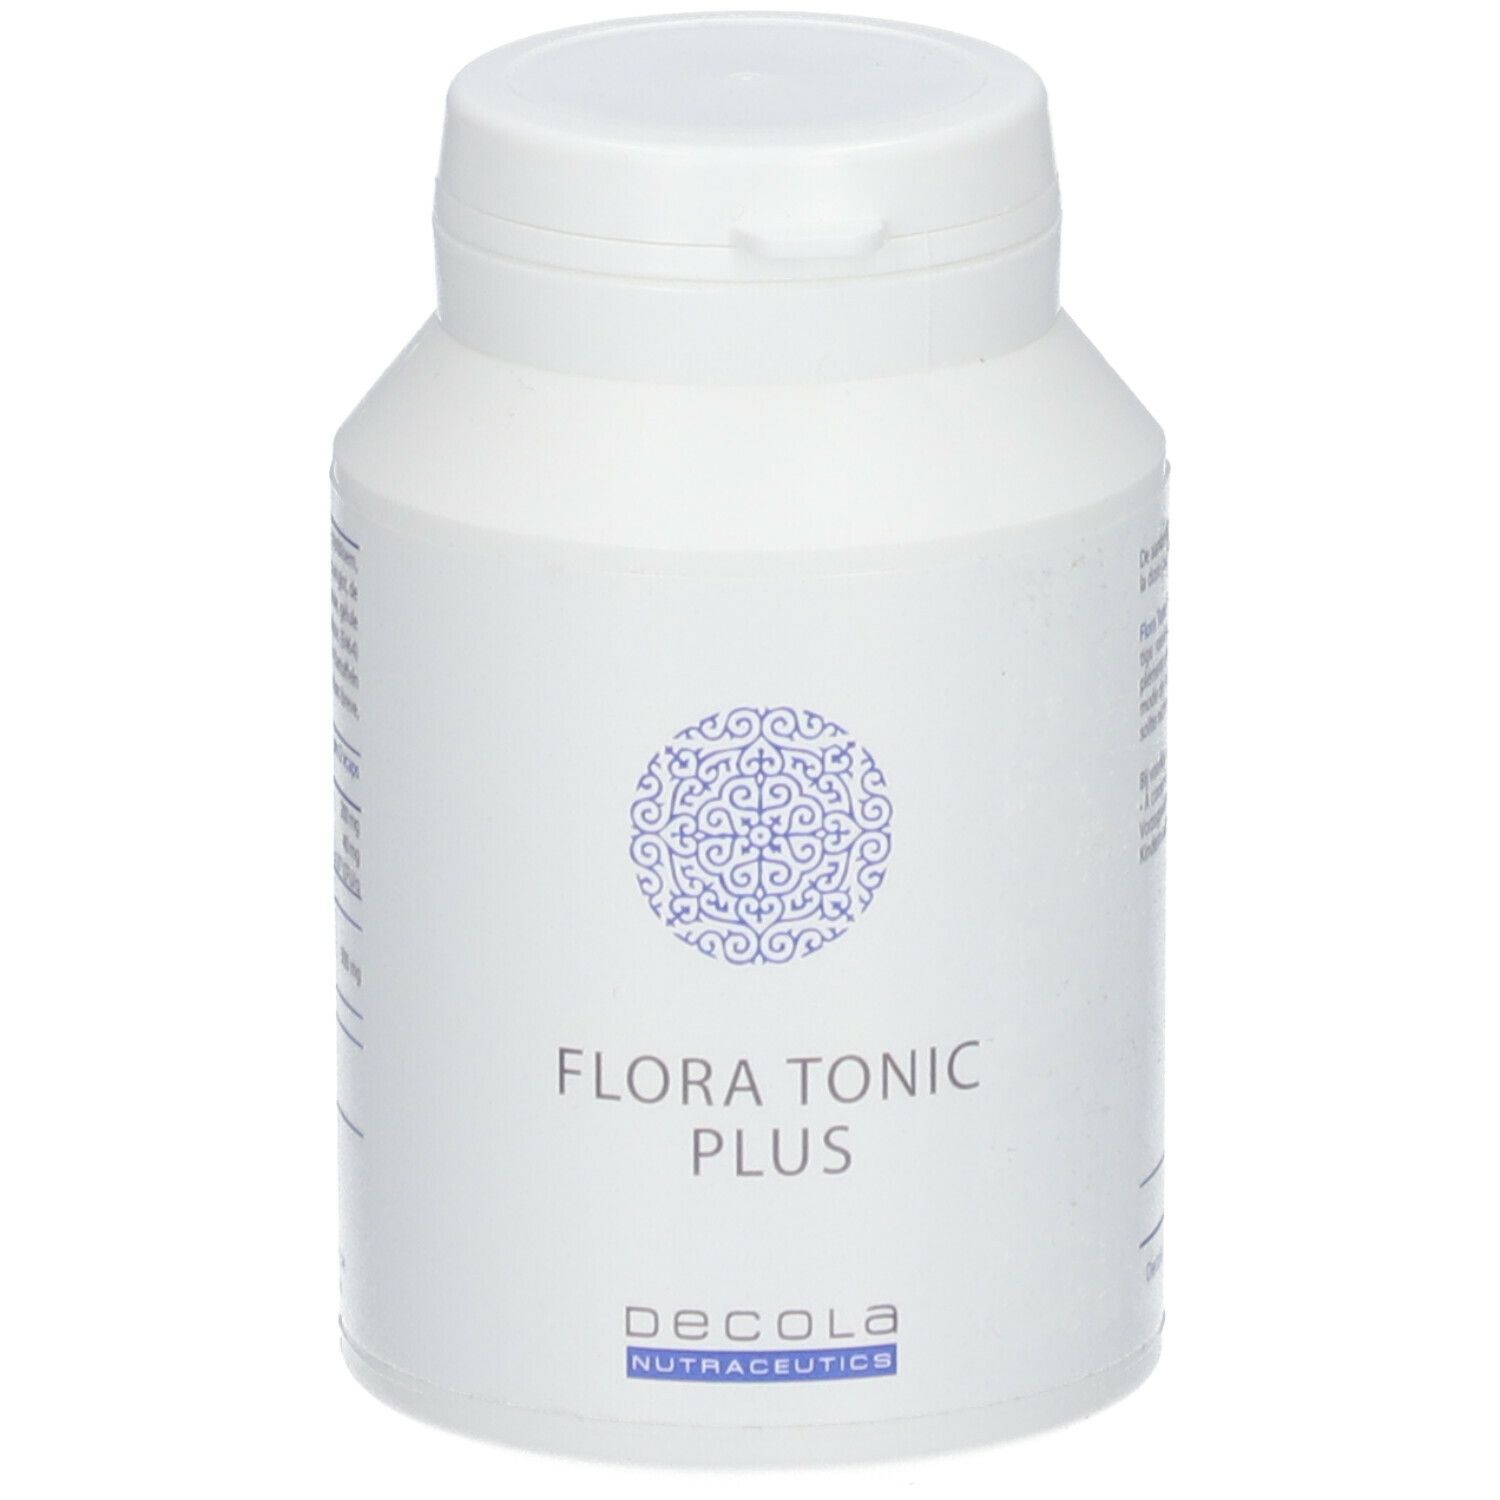 Decola Nutraceutics Flora Tonic Plus